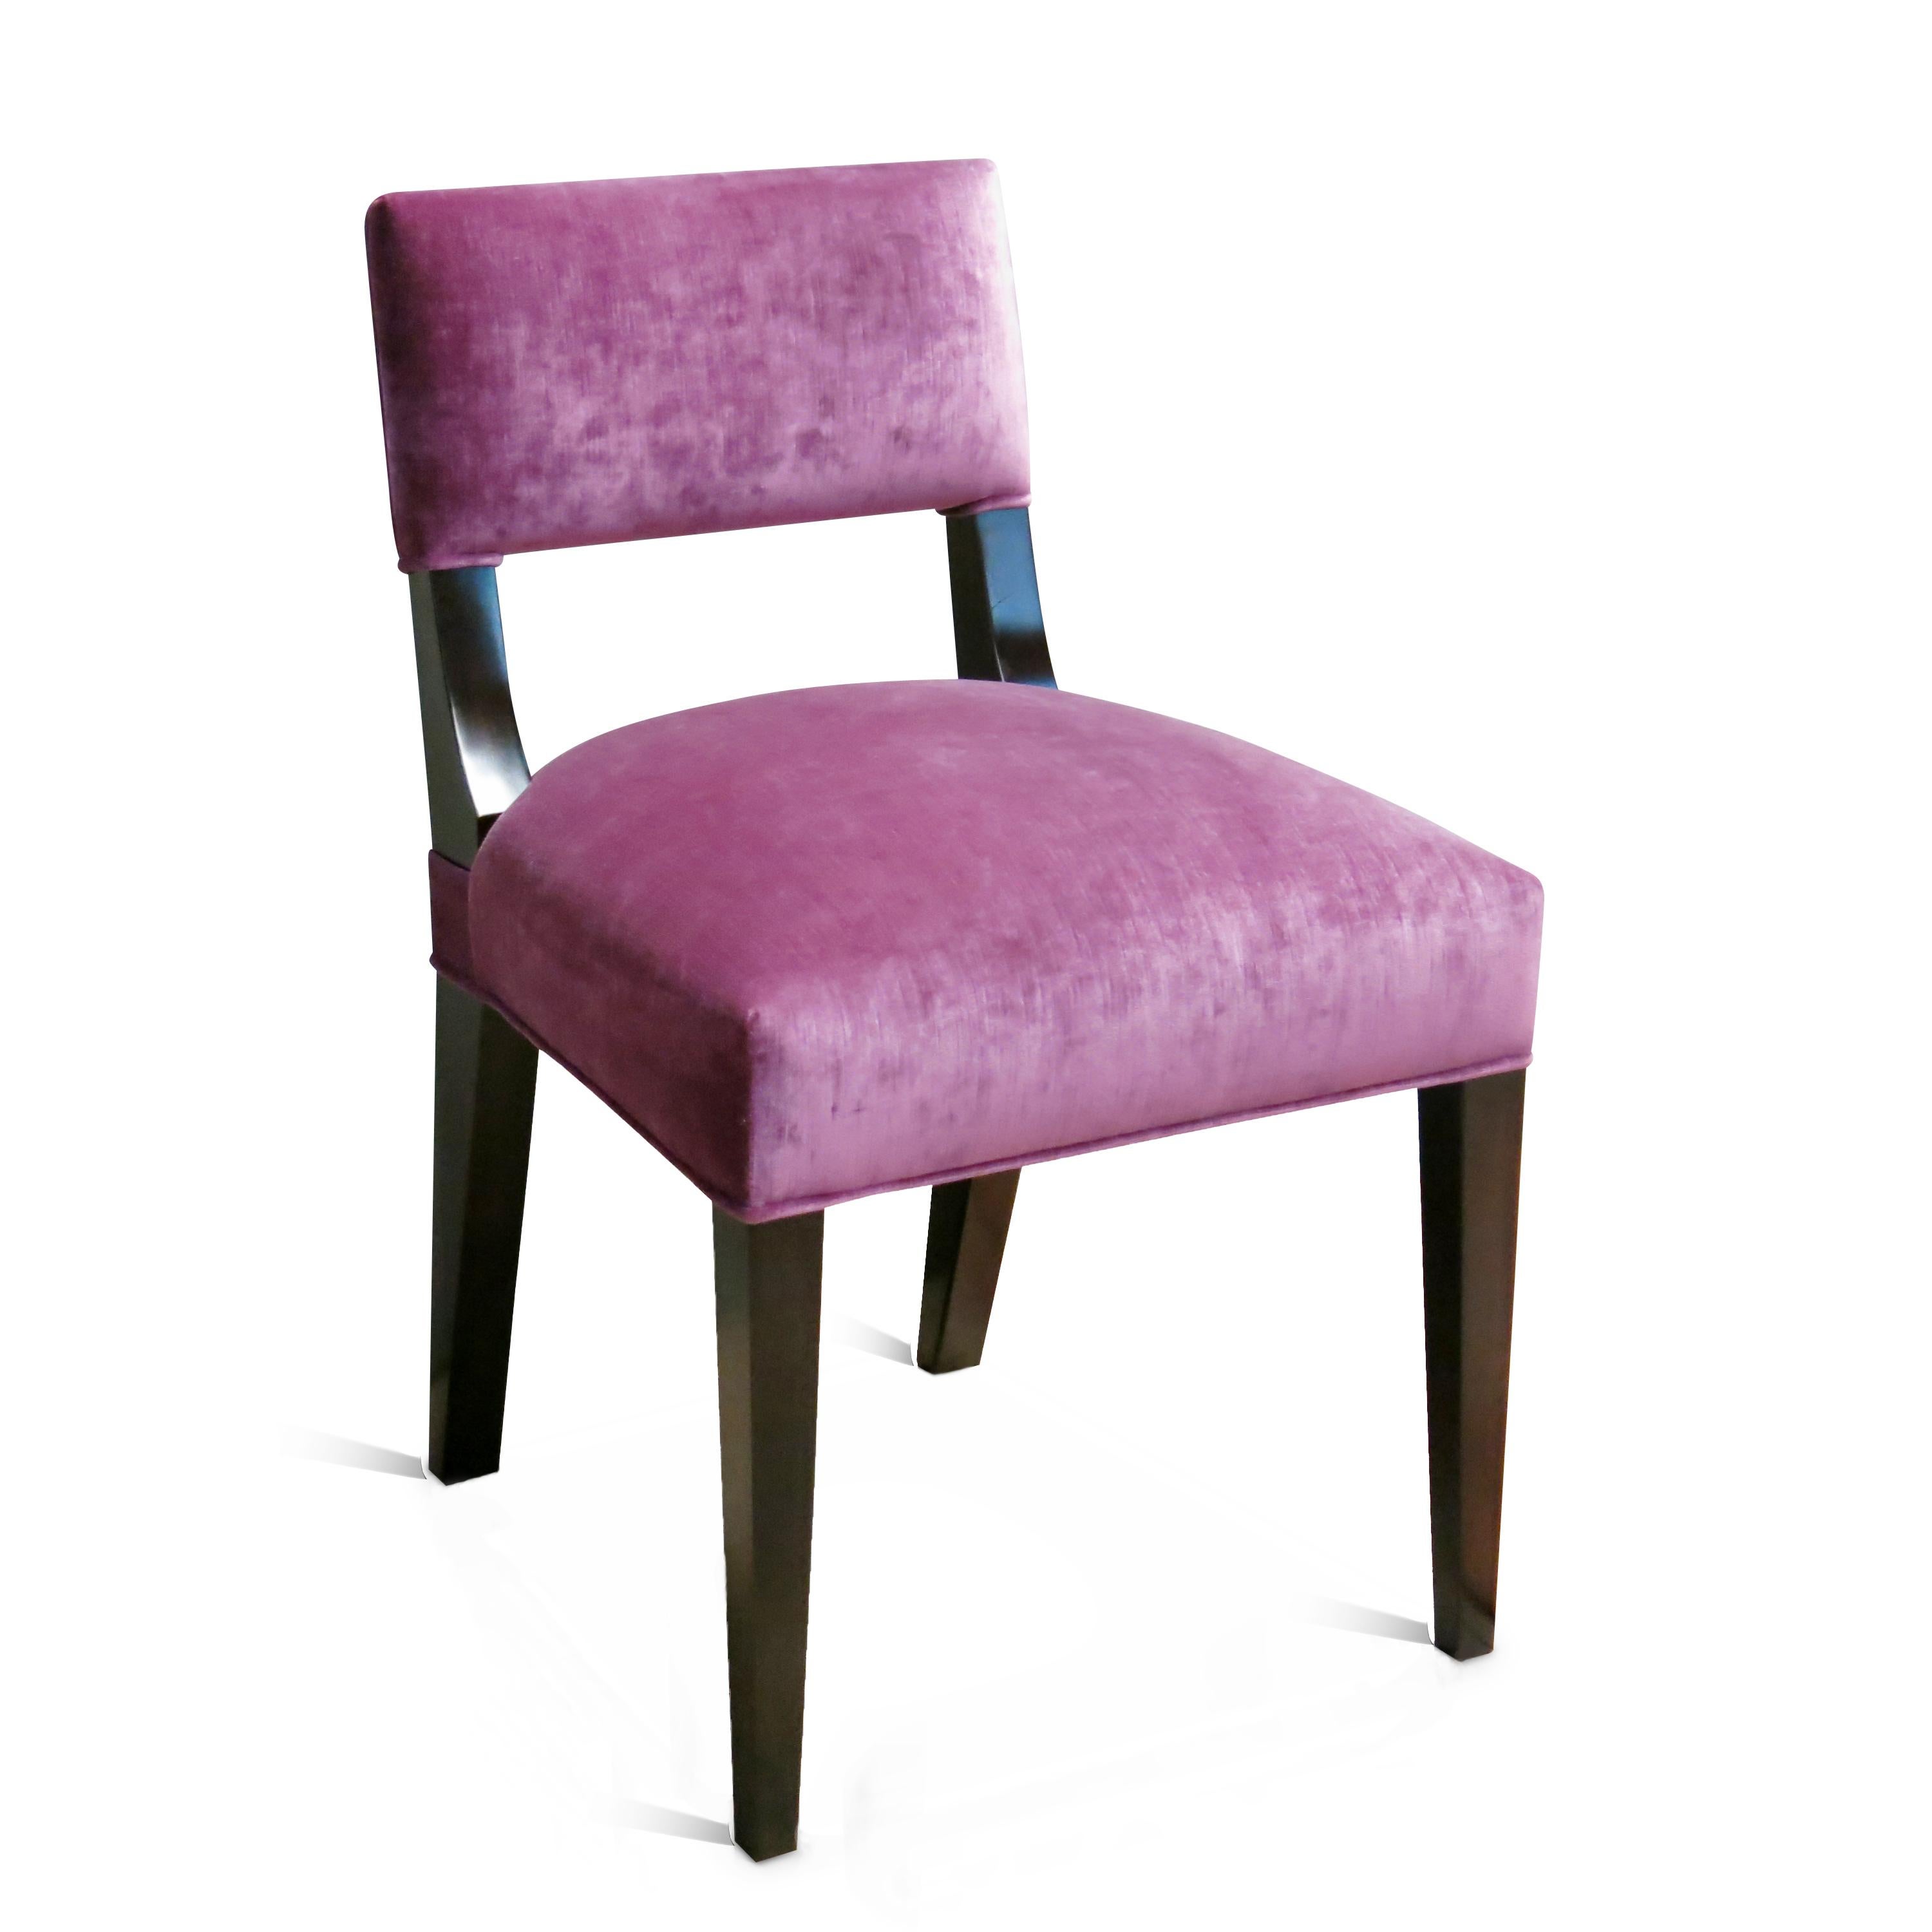 Der Bruno ist ein typischer Stuhl von Costantini mit einer flachen, ergonomisch geformten Rückenlehne. Erhältlich wie abgebildet in einem espresso gebeizten Massivholzrahmen und rosa Stoff und sofort lieferbar. 

Sie können sie auch in